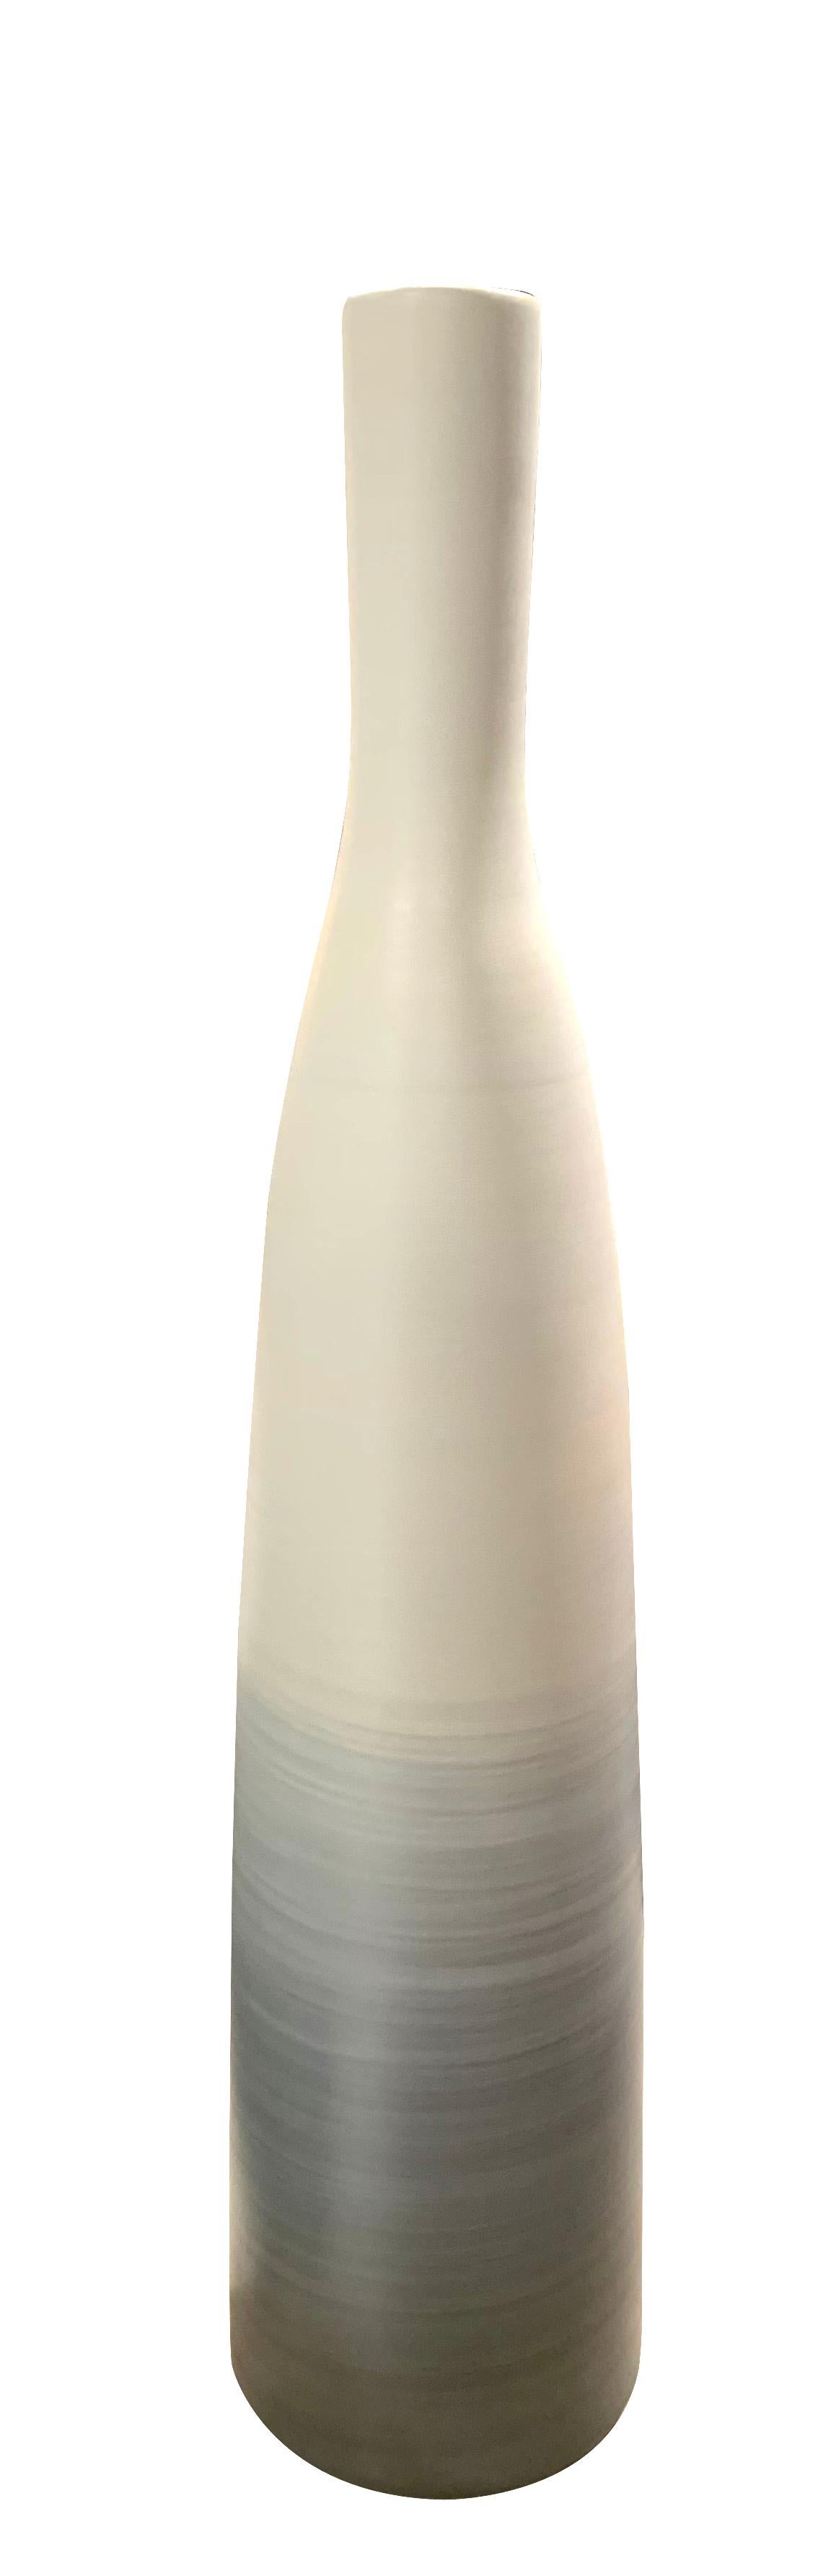 tall thin white vase